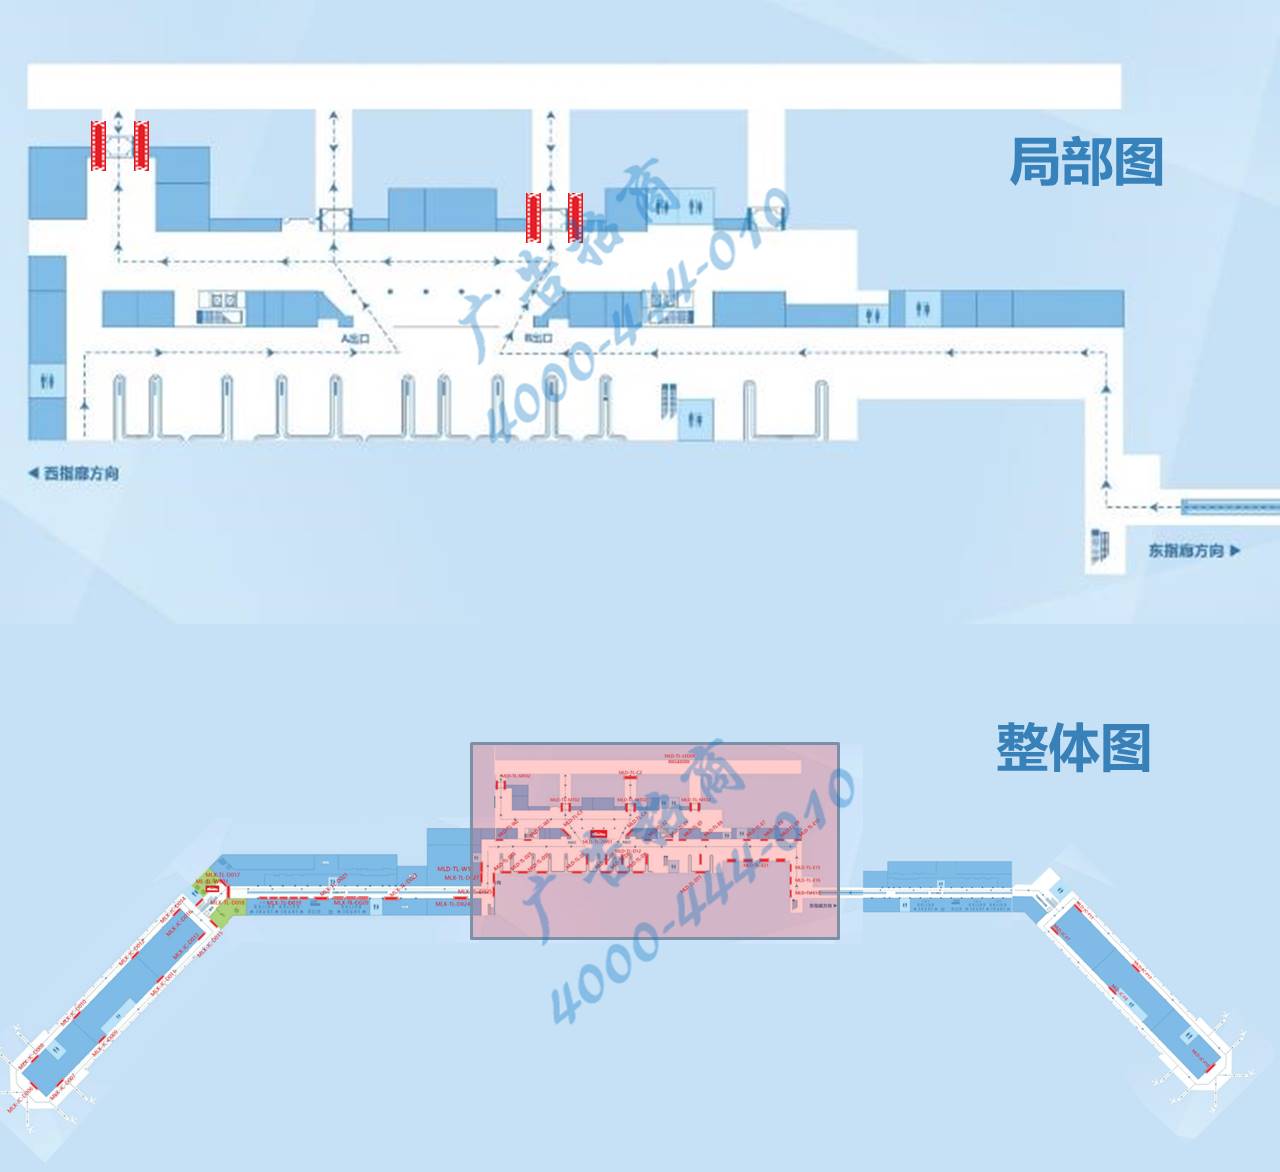 海口机场广告-T1到达厅门廊两侧灯箱MT02点位图